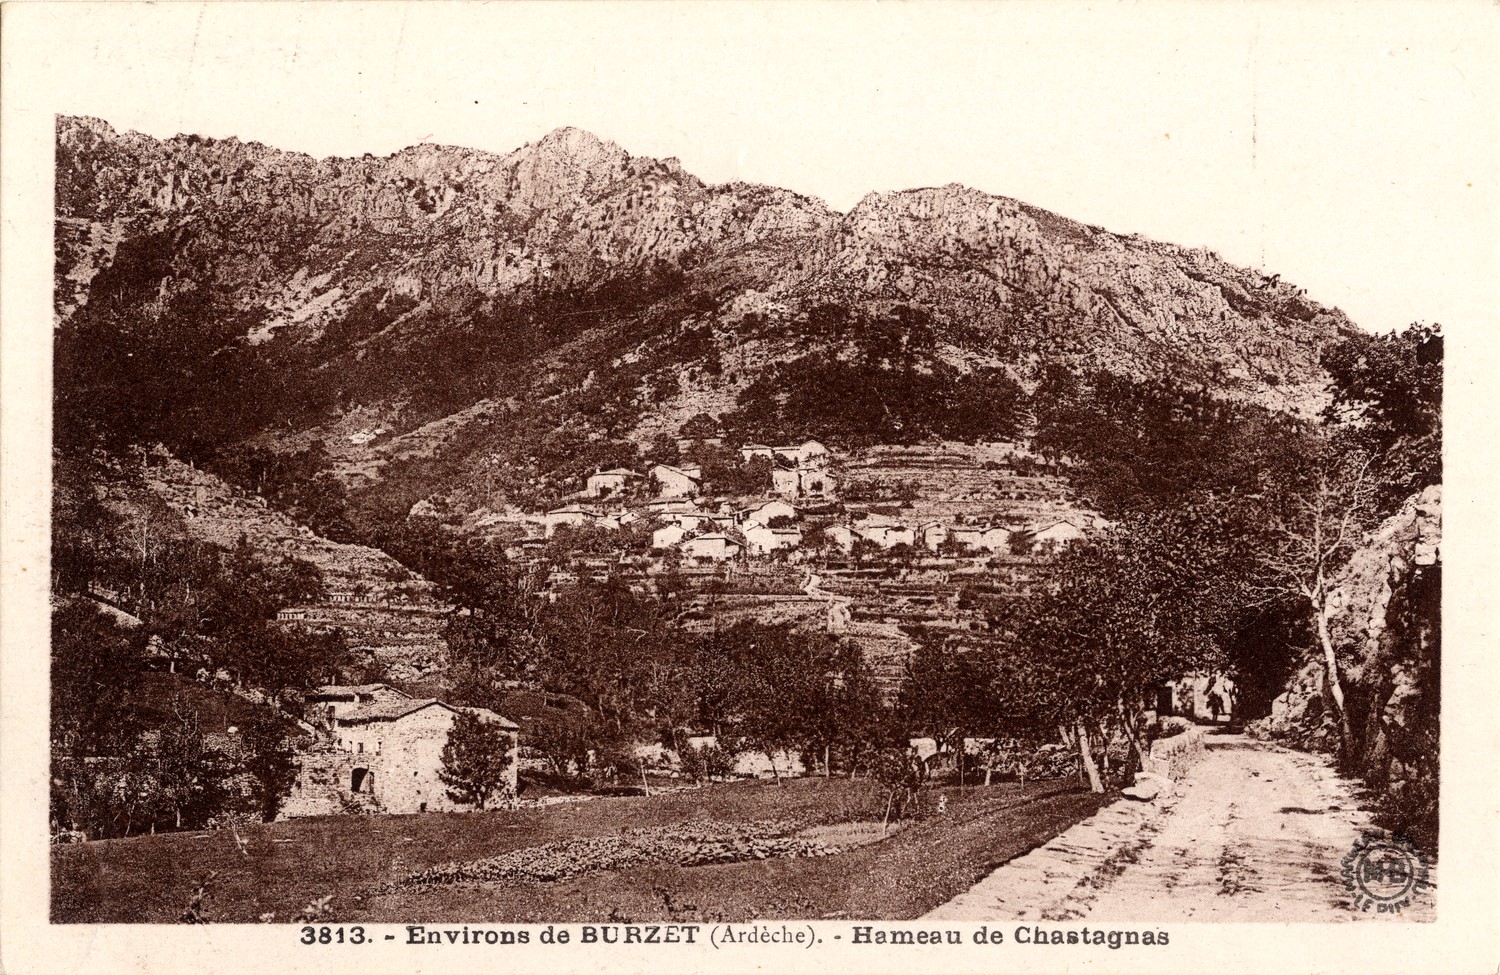 Environs de Burzet (Ardèche) : Hameau de Chastagnas